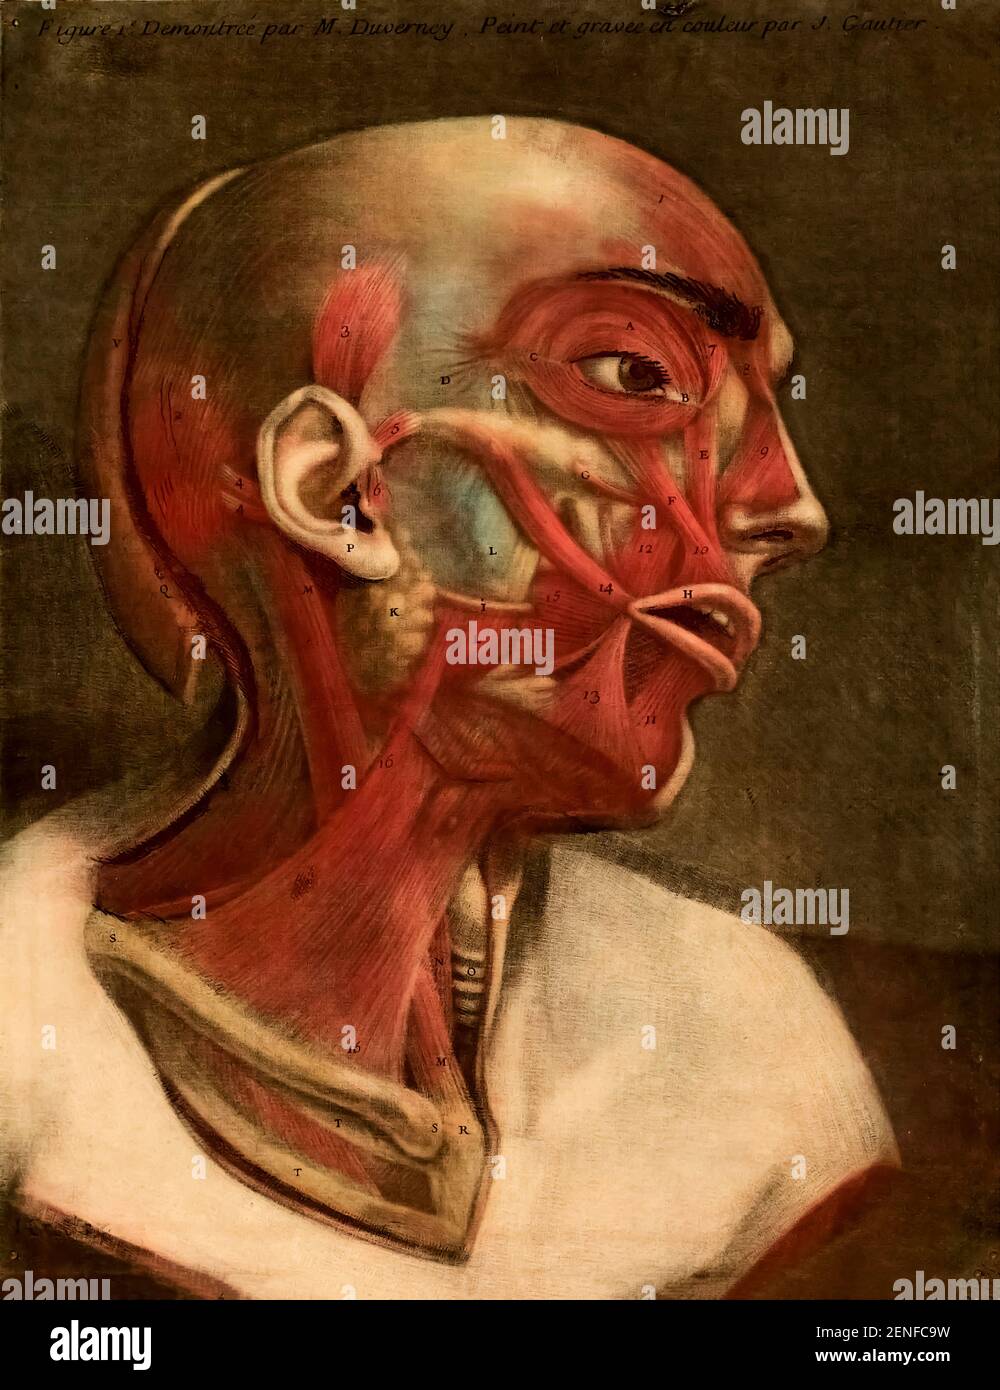 Anatomie humaine l'essai d'anatomie a été produit par Gautier d'Agoty en 1745 à Paris, France. Il s'agit d'un atlas remarquablement détaillé de la tête, du cou et de l'épaule du corps humain avec un texte explicatif en français. Les images anatomiques ont été basées sur des cadavres humains disséqués par Joseph Duverney (1) et produits à l'aide de la méthode mezzotint de gravure et d'impression. L'impression de gravure Mezzotint a été inventée par Jaques Christophe le Bton en 1719. Les tirages Mezzotint (de l'expression italienne 'mezza tina' ou 'demi-ton') sont produits par la gravure d'une plaque métallique avec de nombreux petits trous qui Hol Banque D'Images